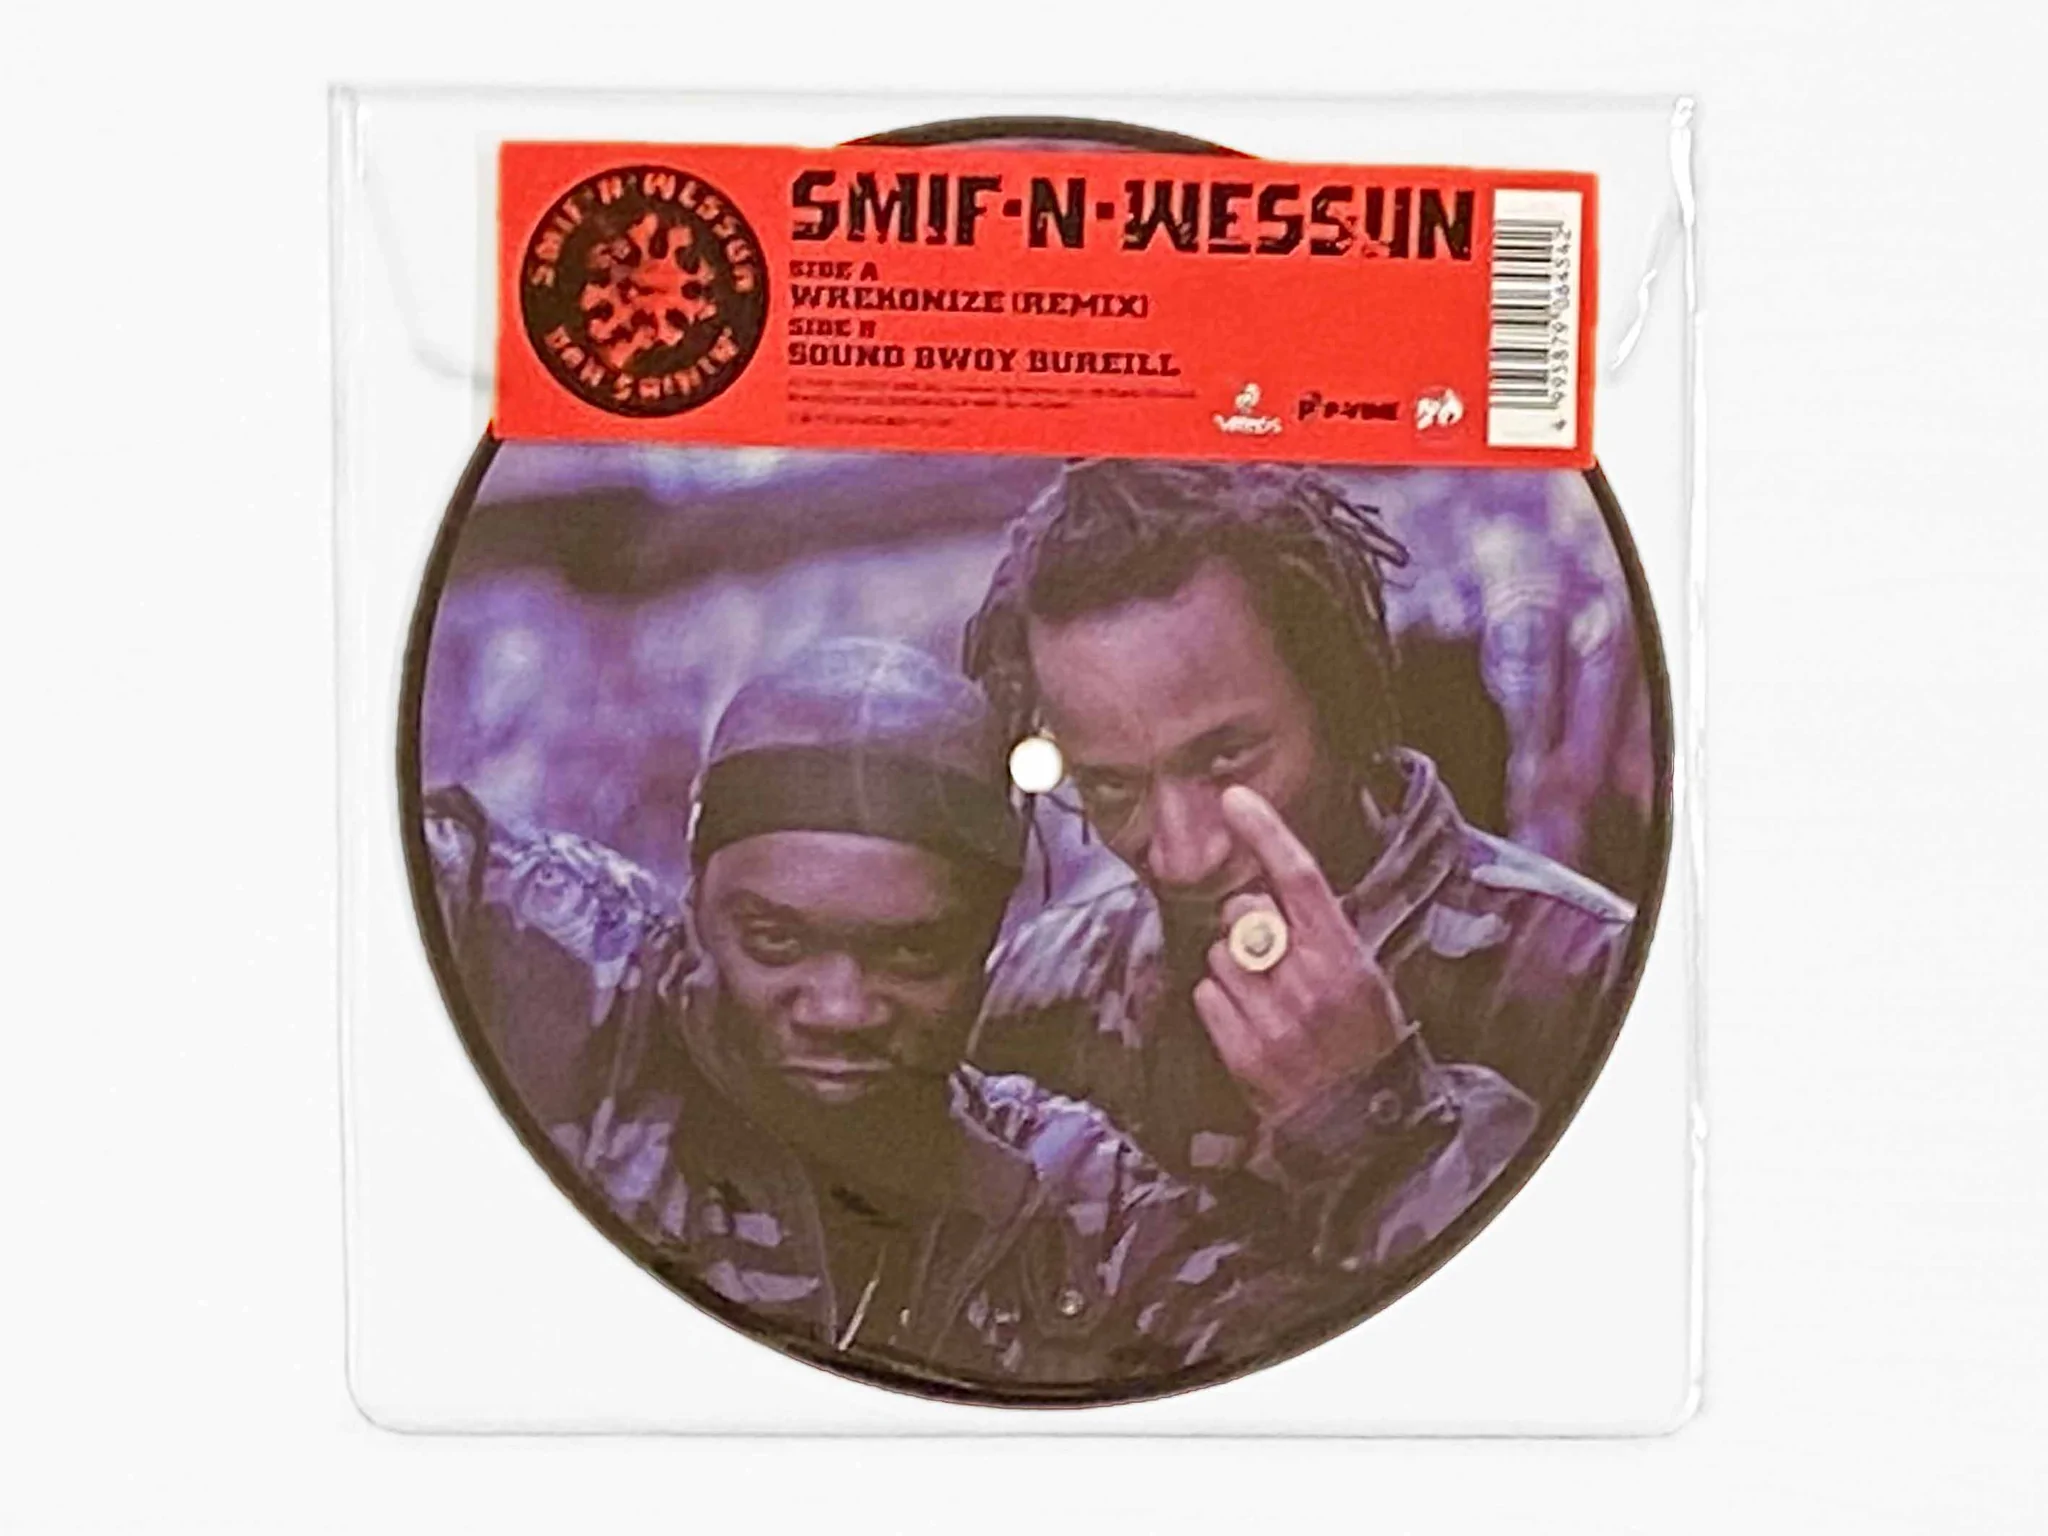 SMIF-N-WESSUN / スミフン・ウェッスン / Wrekonize (Remix) / Sound Bwoy Bureill 7"(PICTURE VINYL)